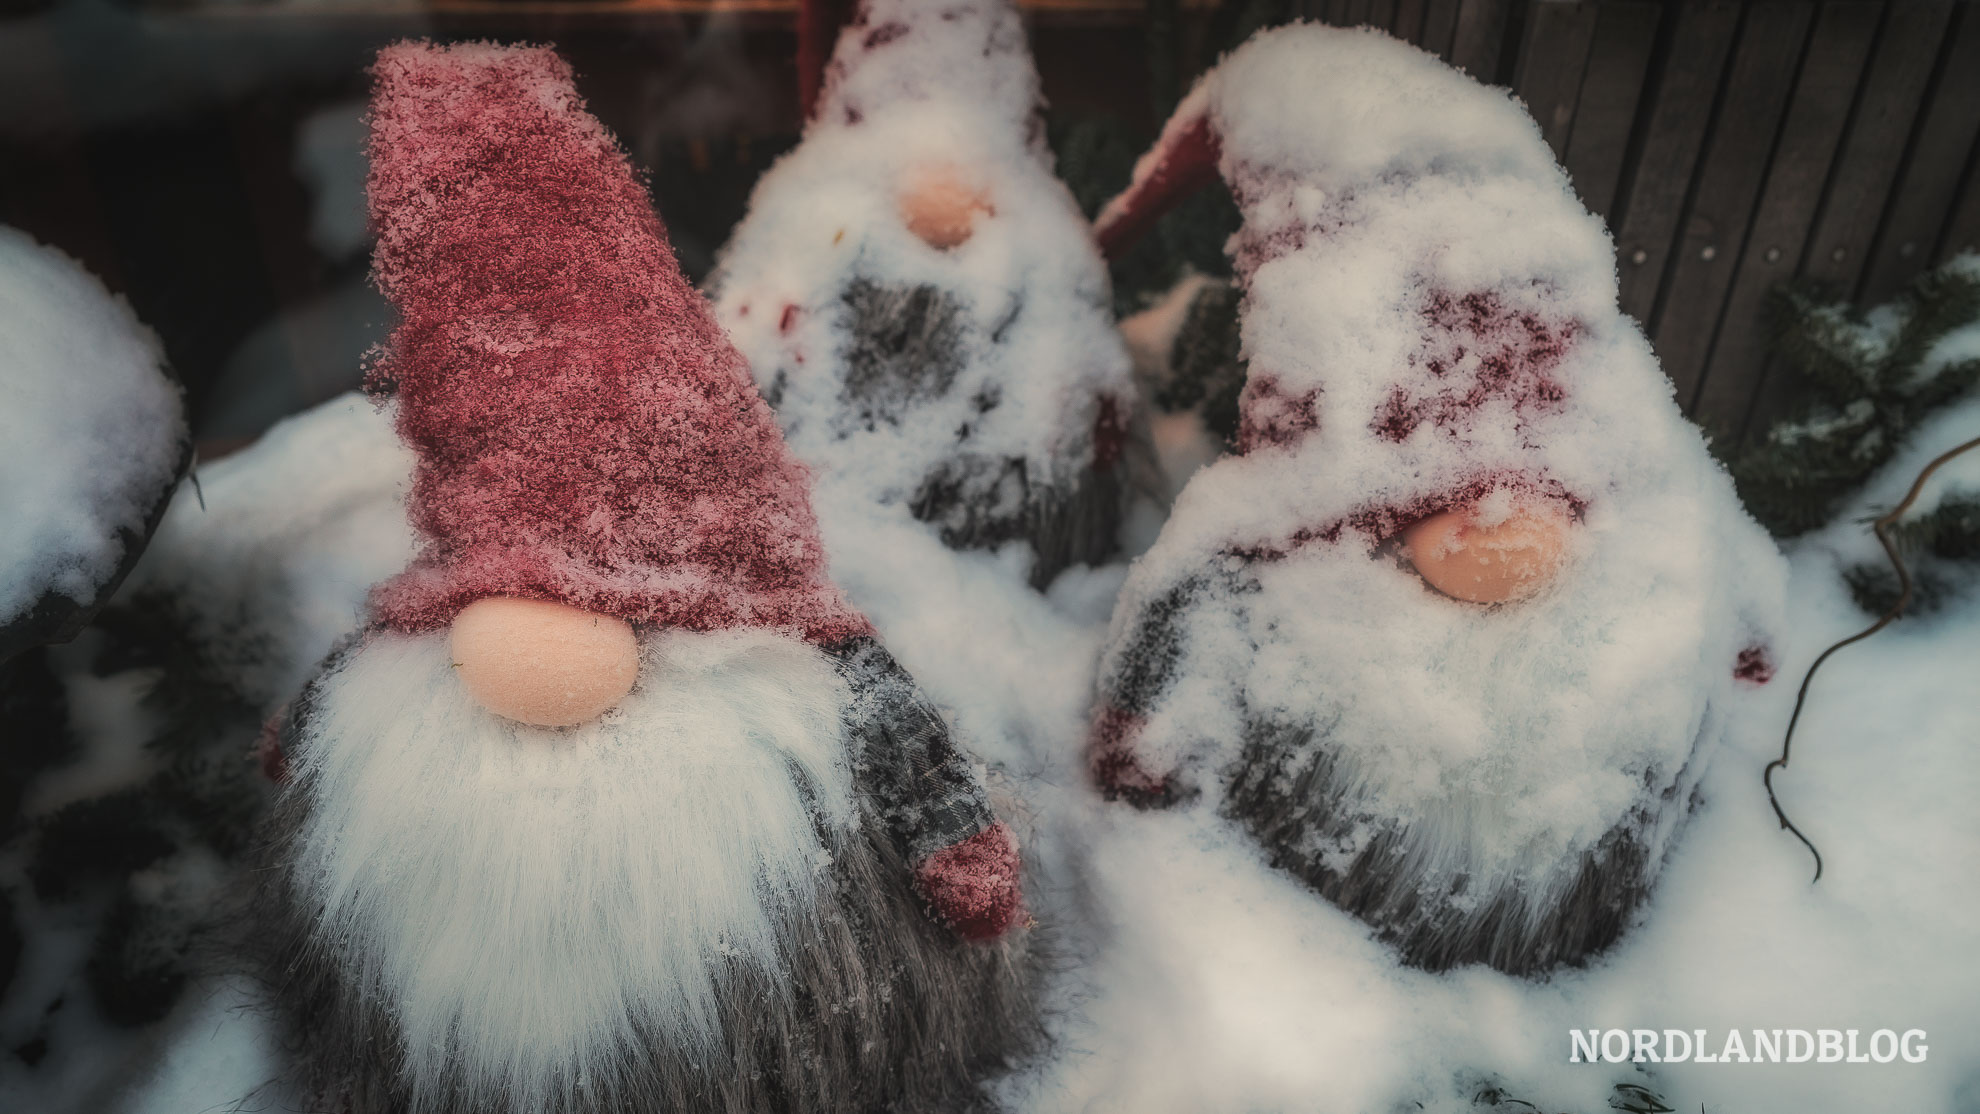 Weihnachtsgeschichte aus Norwegen mit drei Nissen im Schnee